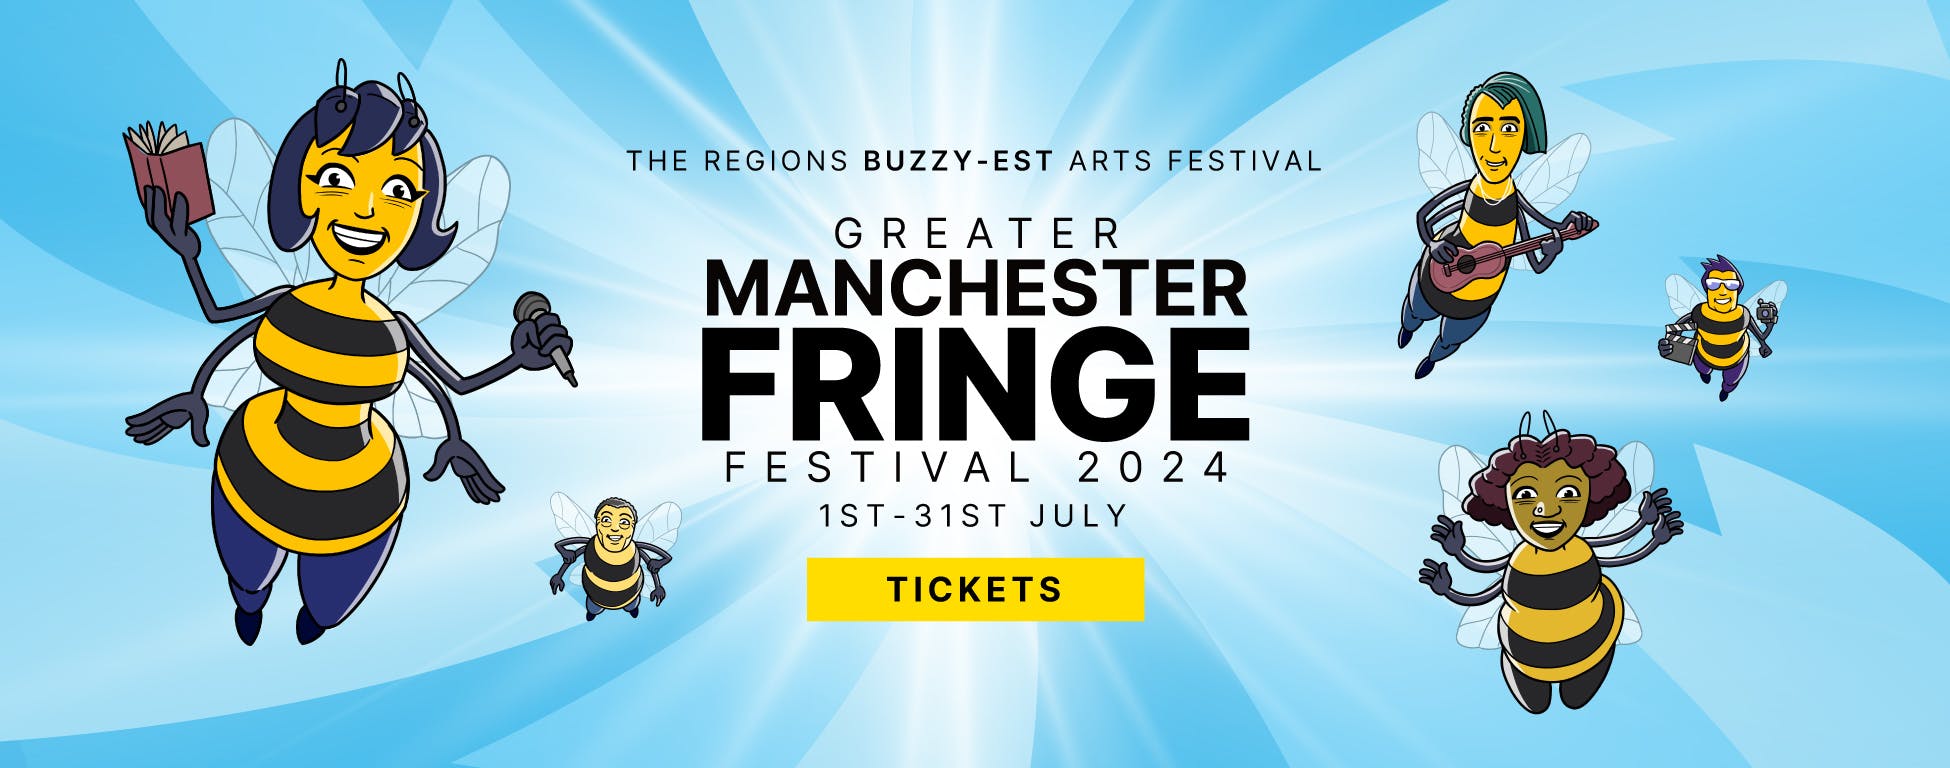 The Greater Manchester Fringe Festival 2024